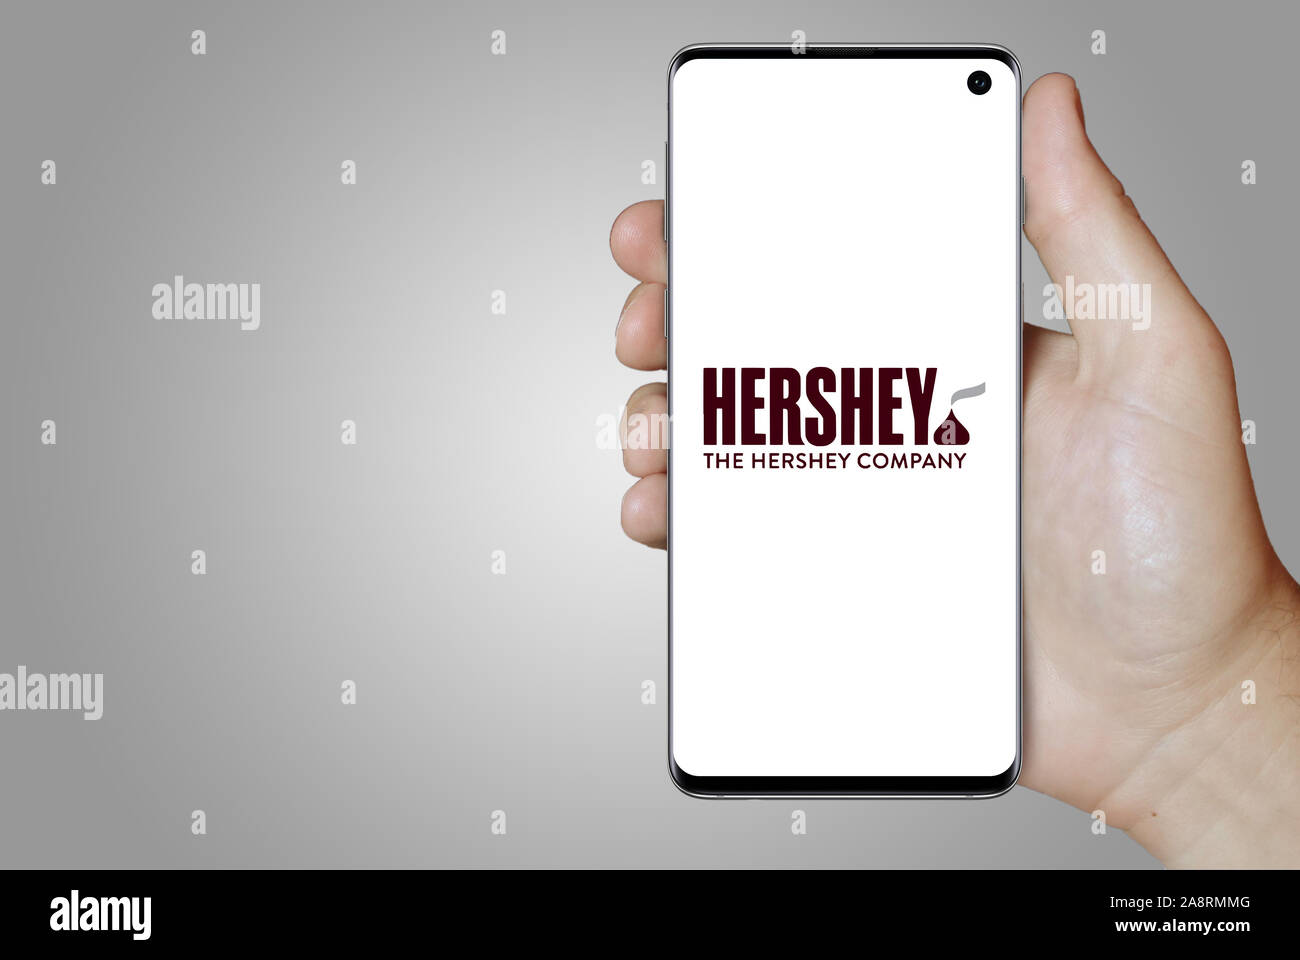 Logo der öffentlichen Unternehmen der Hershey Company auf einem Smartphone. Grauer Hintergrund. Credit: PIXDUCE Stockfoto